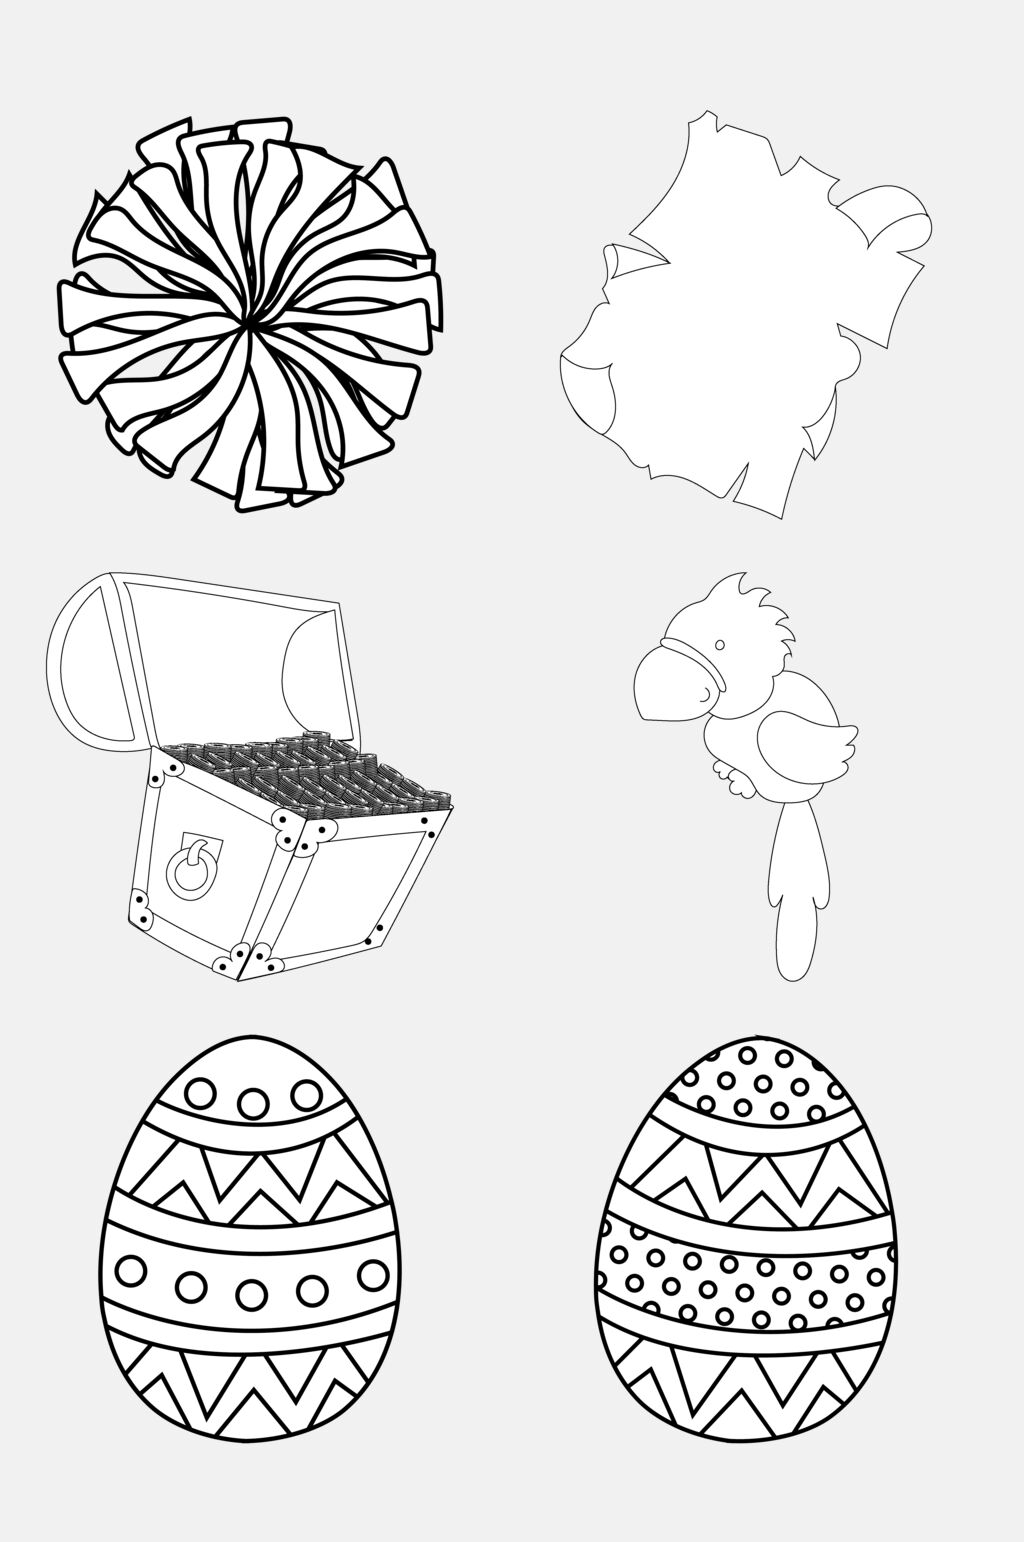 鸡蛋圆形黑卡通简笔画图形免抠素材